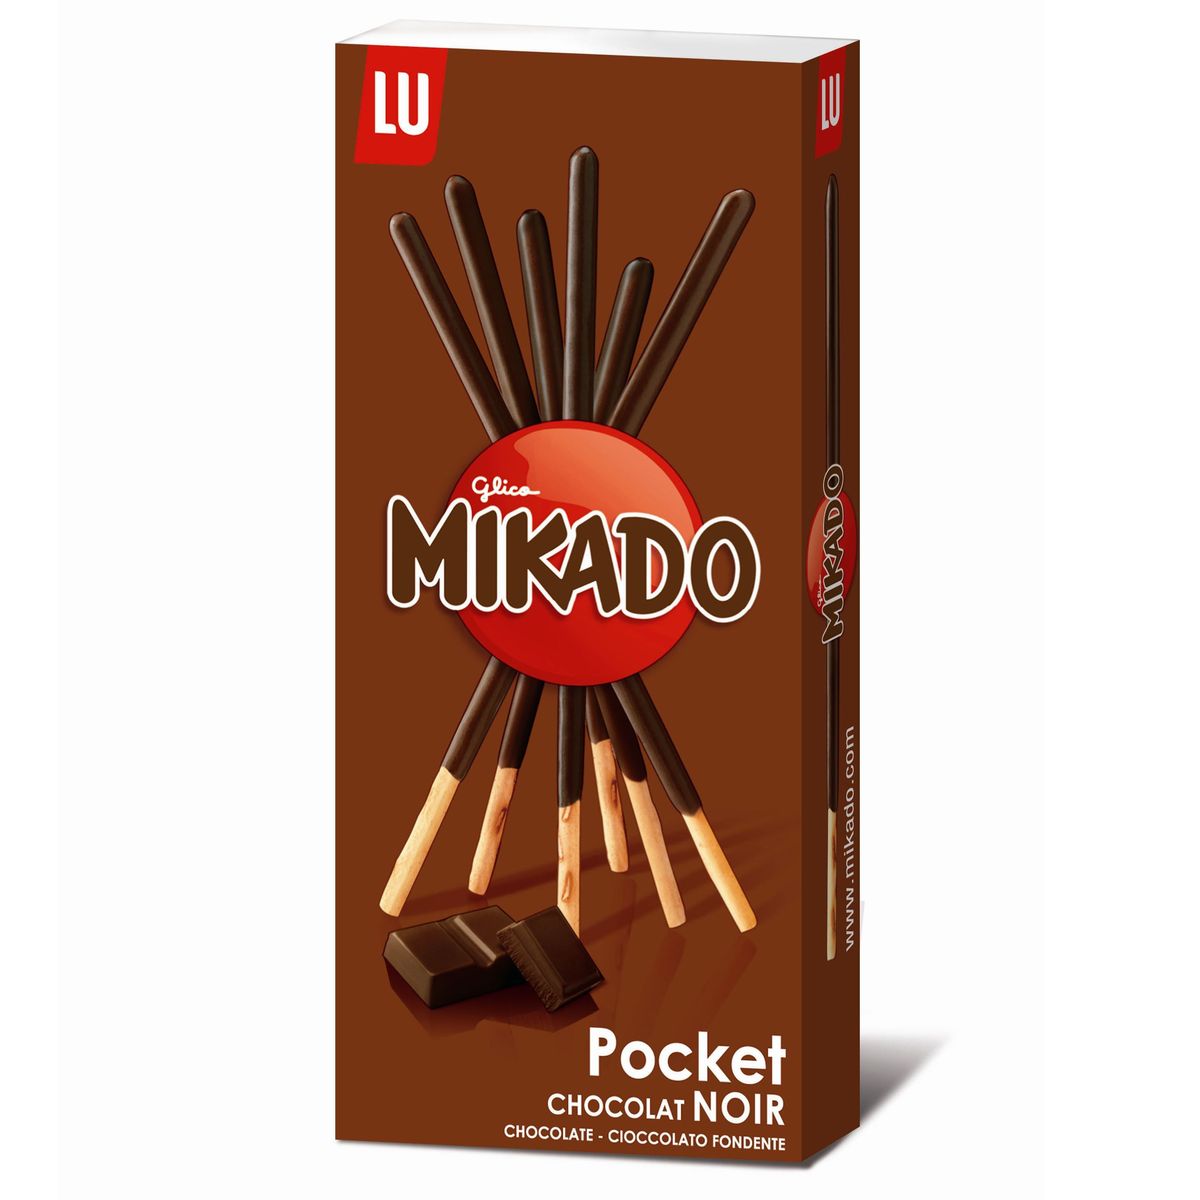 Biscuits nappés au chocolat au lait Mikado LU